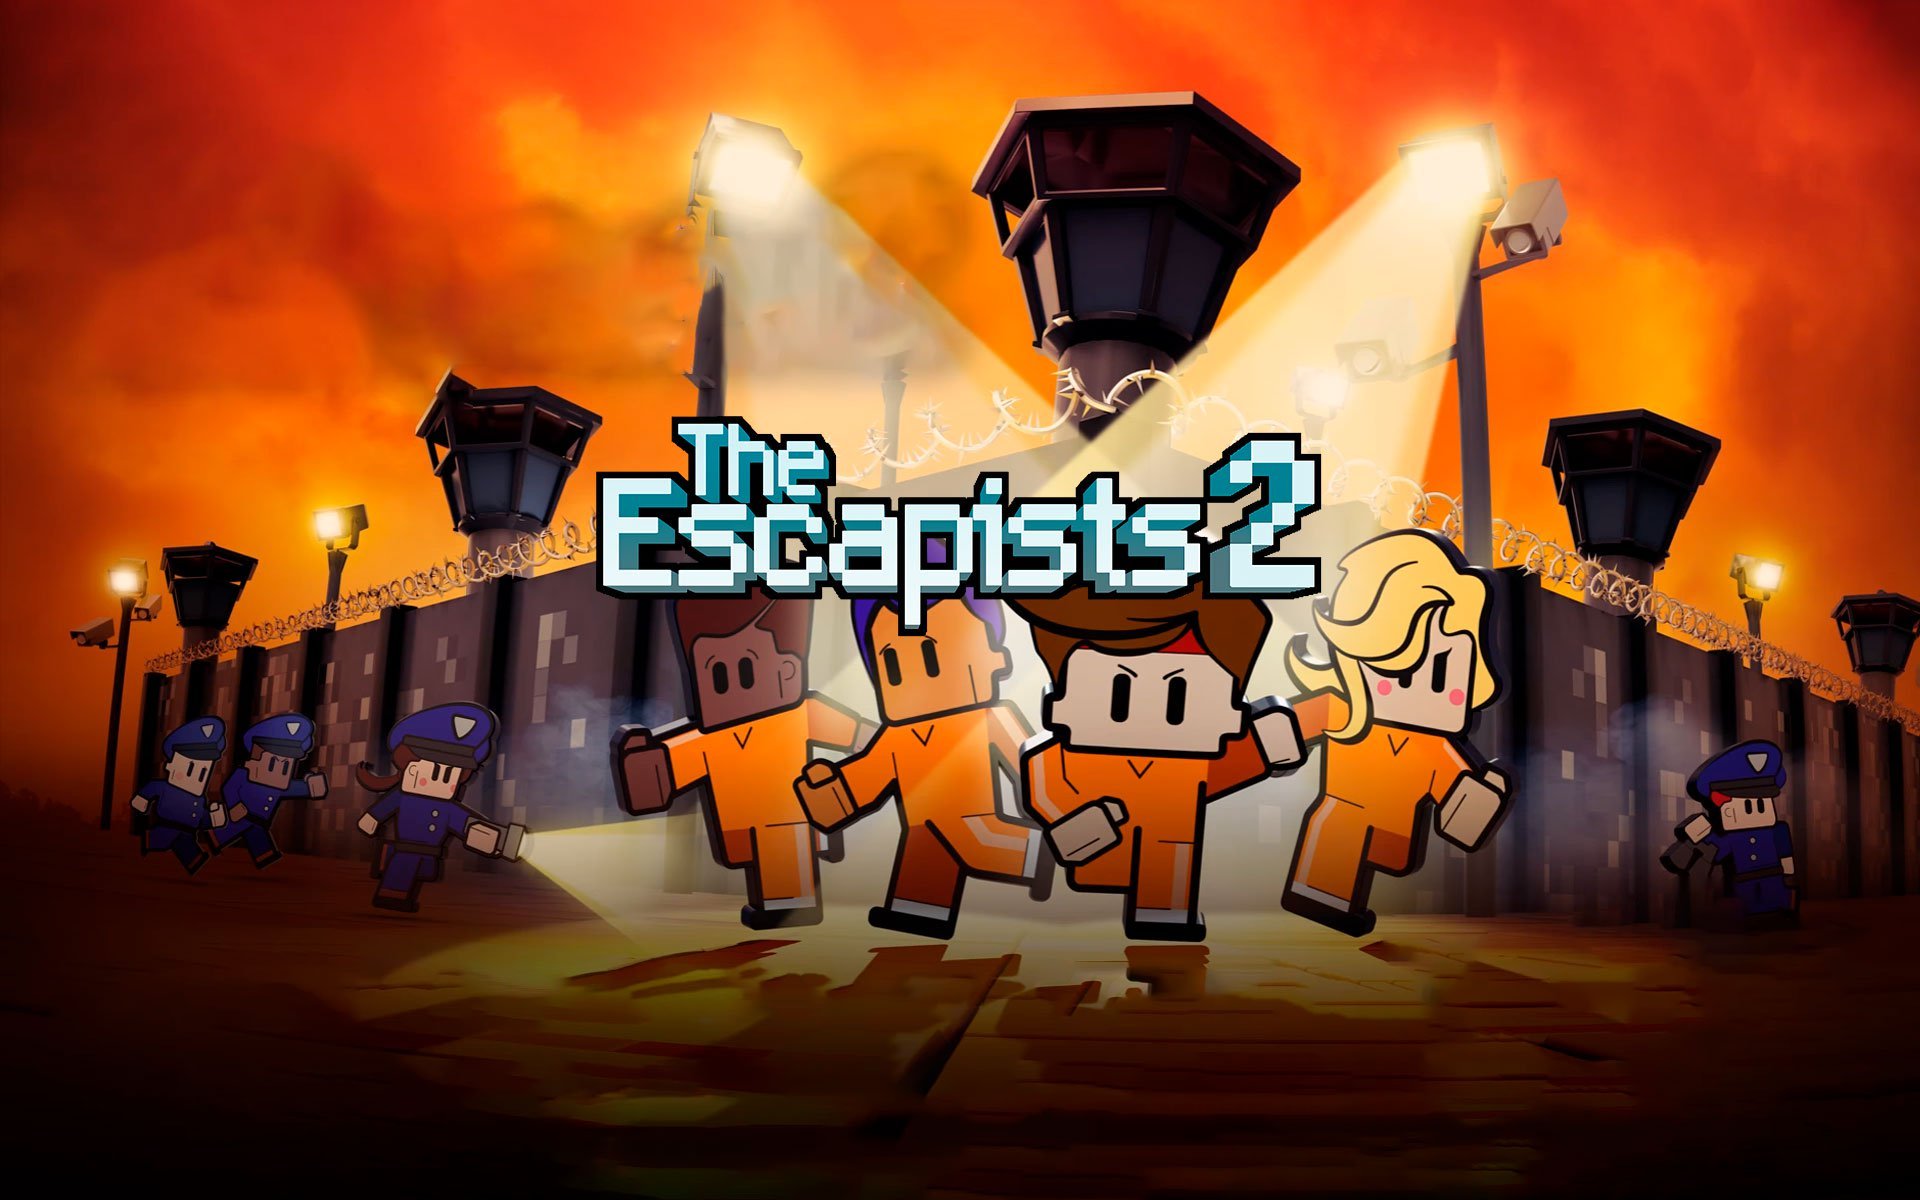 The Escapists 2 por R$ 59.99